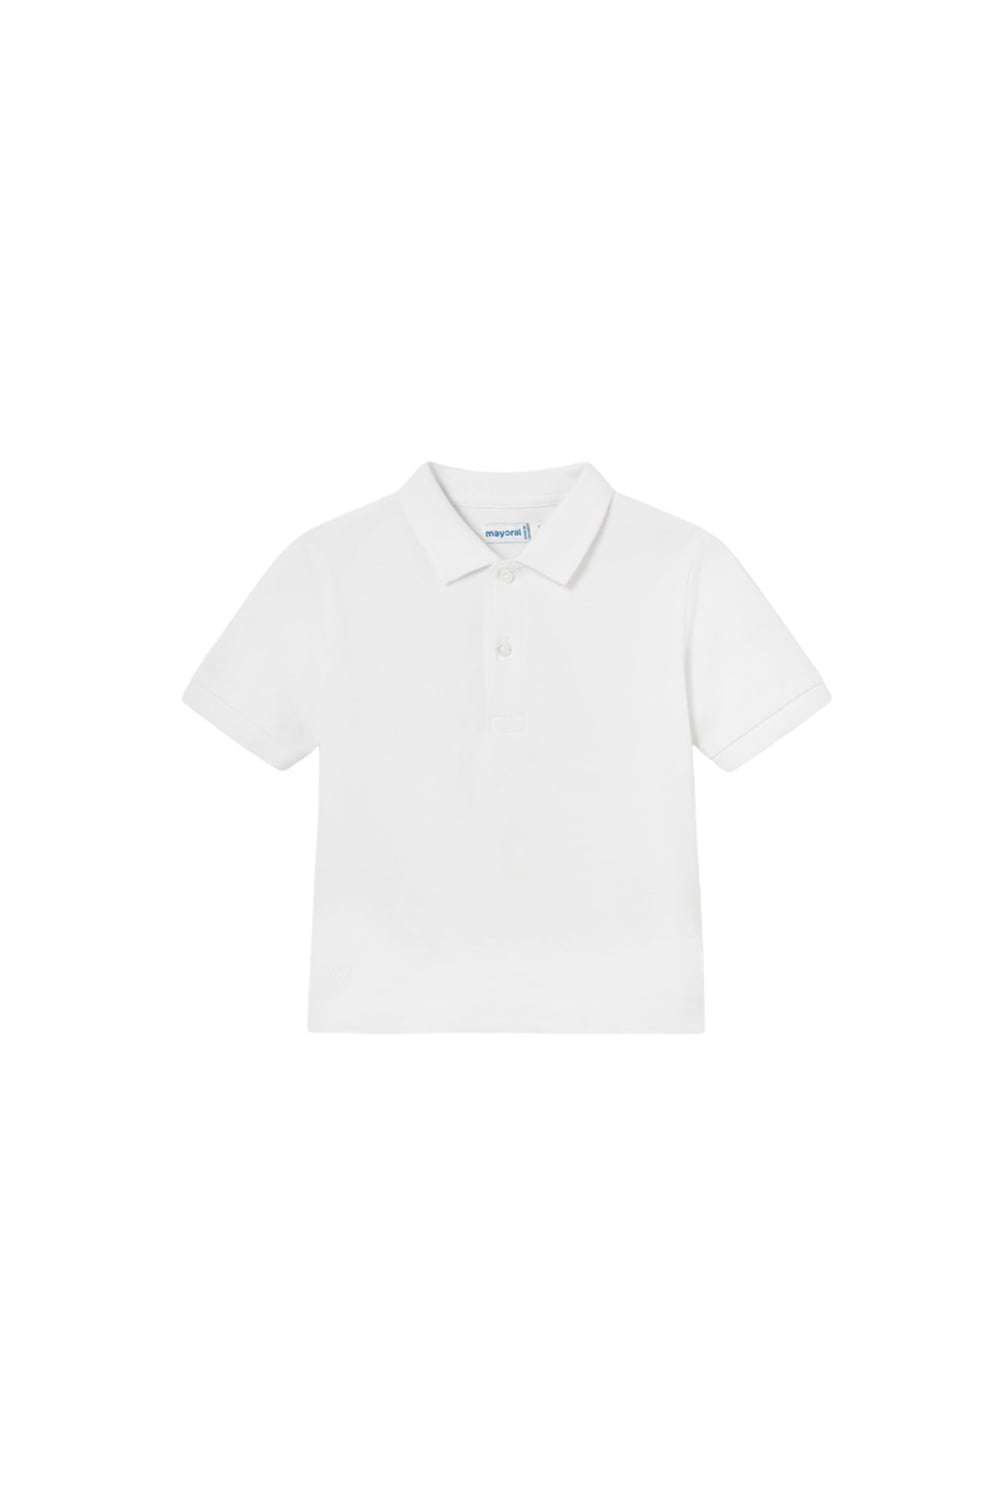 Παιδική Μπλούζα Για Αγόρι MAYORAL 24-00102-015 Άσπρο